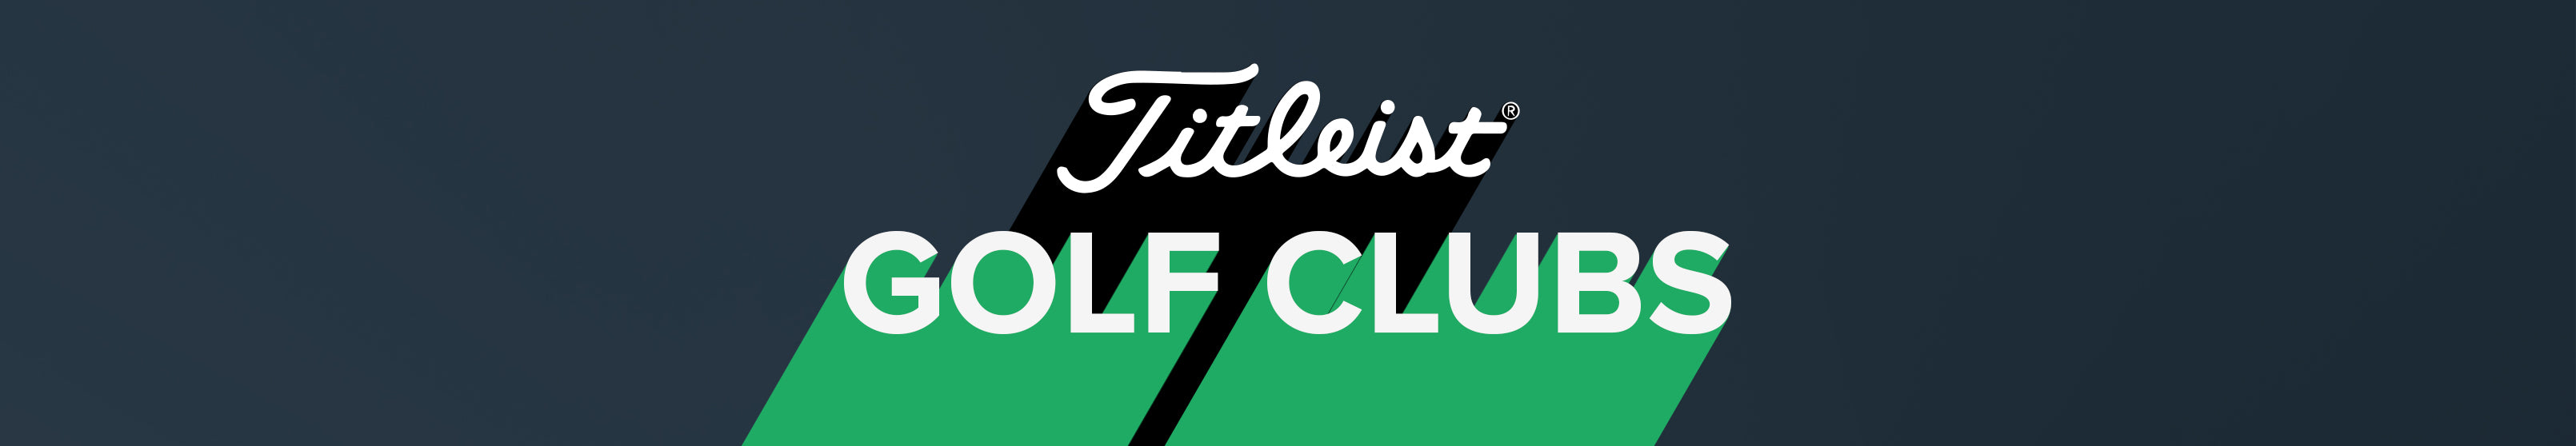 Titleist Golf Clubs